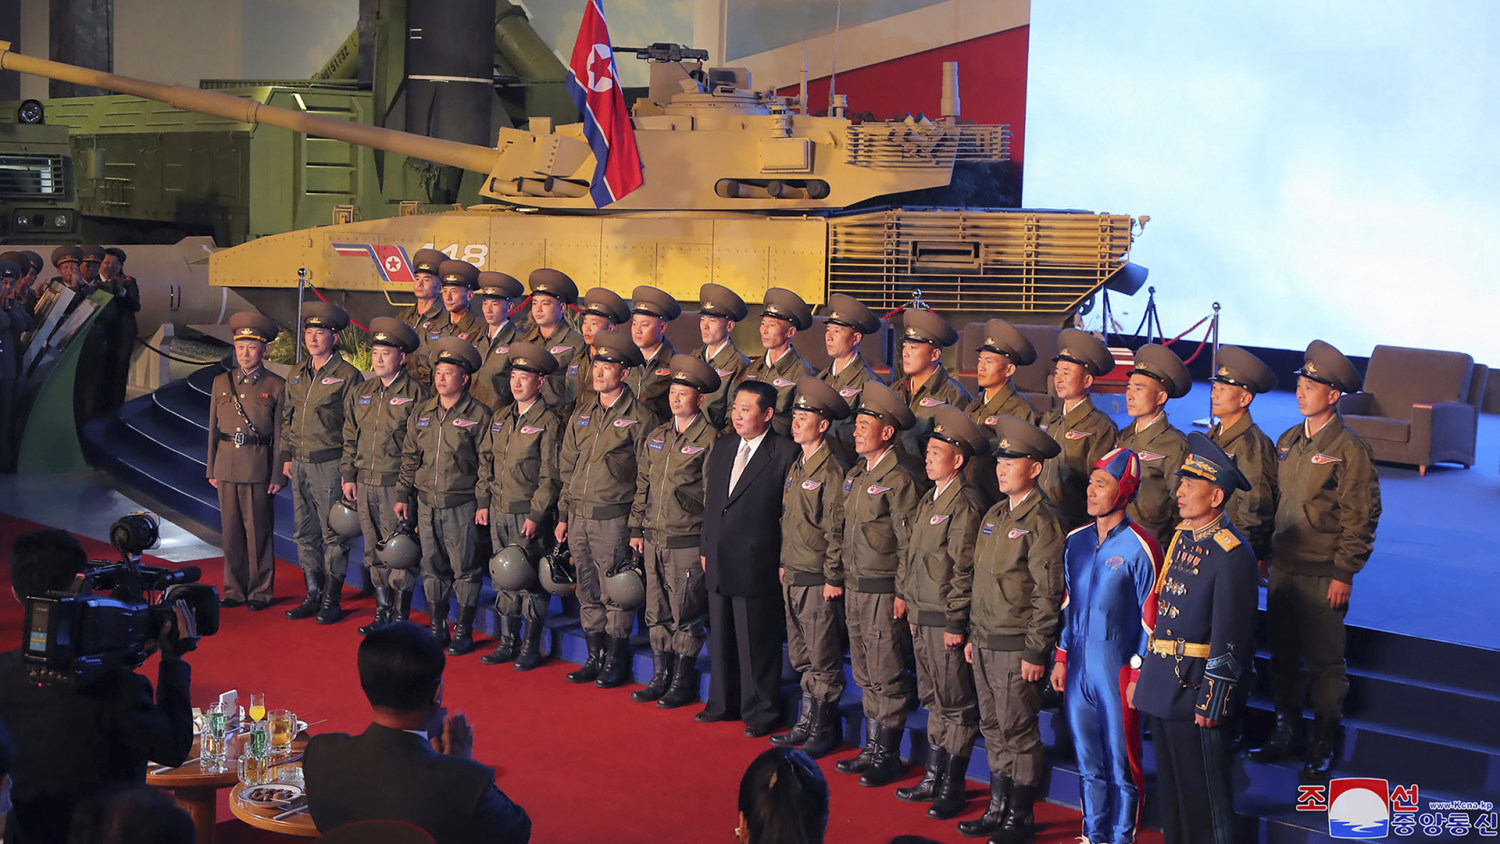 Planta de semillero Juramento Silla Corea del Norte presenta una nueva arma ultra-moderna y sorprende con un  soldado vestido como "una bala de cañón humana"